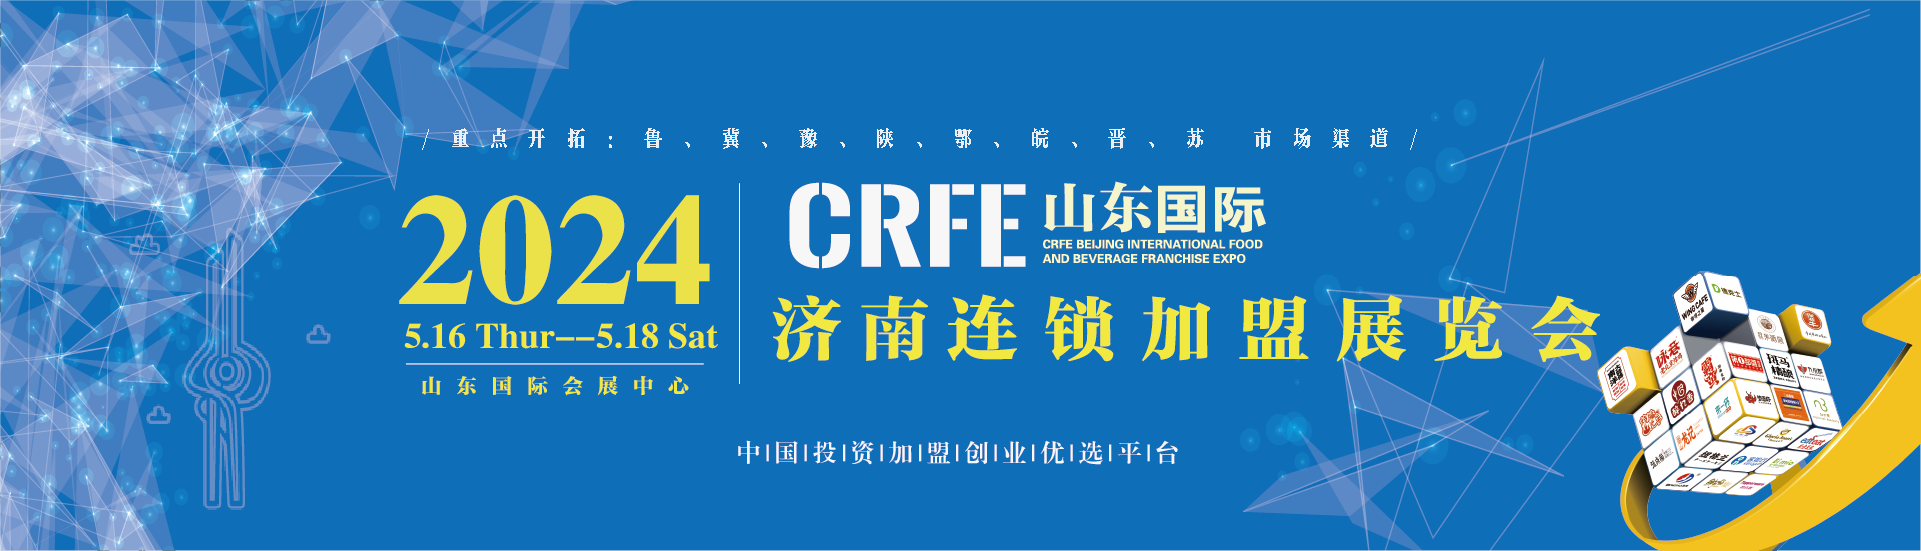 【CRFE济南连锁加盟展】：发起行业首个千万真奶补贴，喜茶进一步强化真奶优势